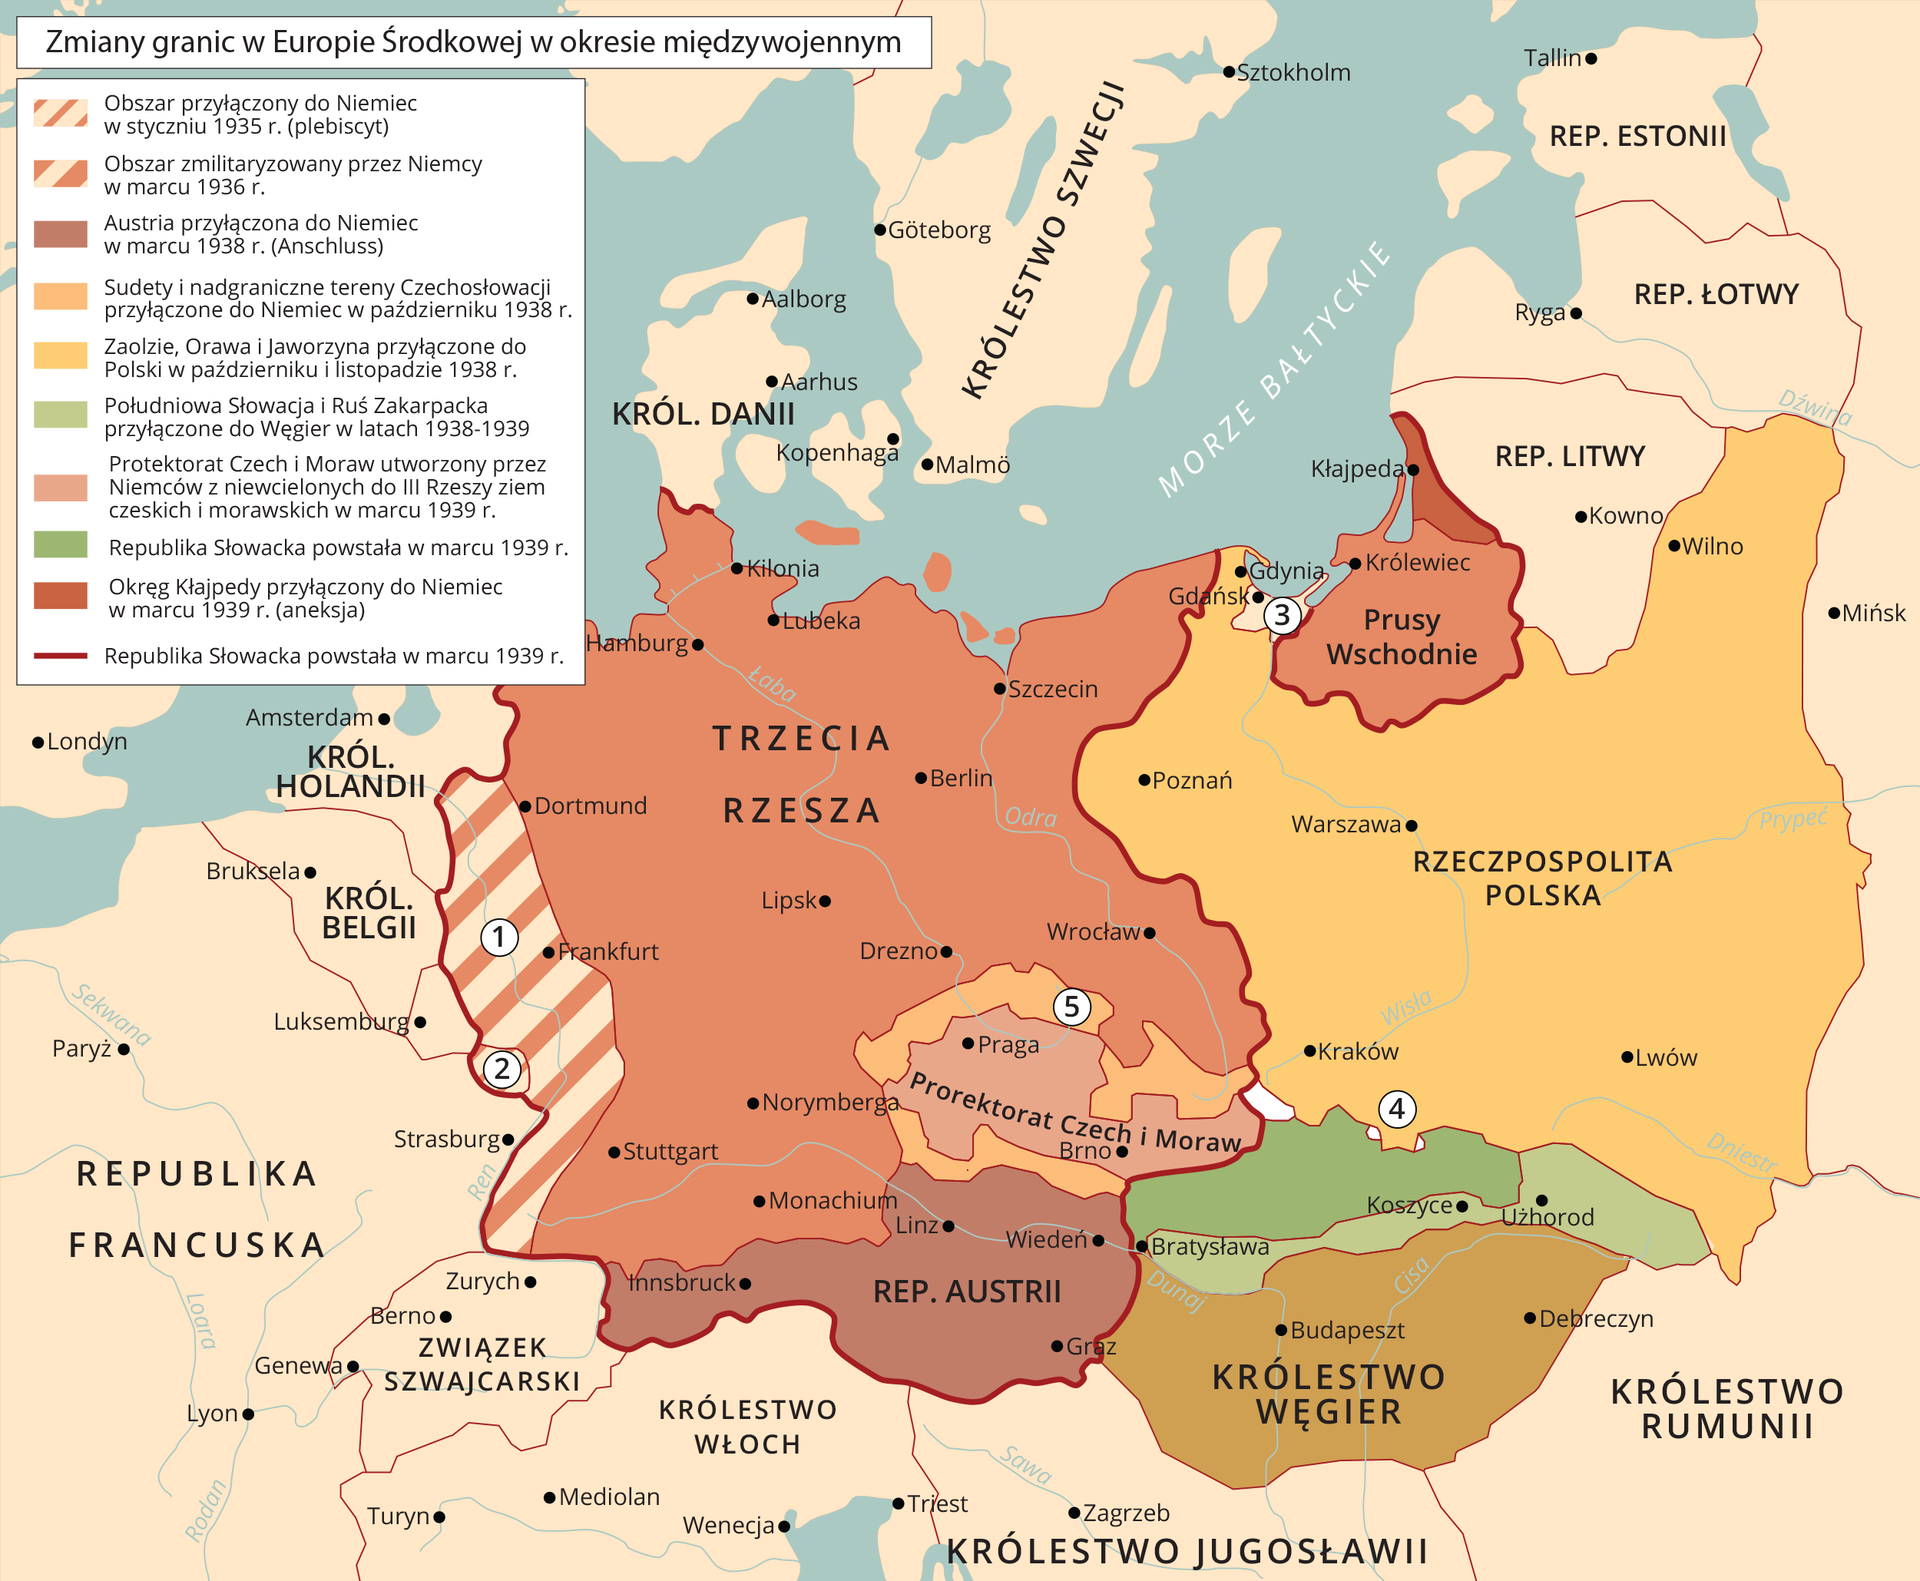 Mapa Europy. Prezentuje zmiany granic w Europie Środkowej w okresie międzywojennym. Zagłębie Saary przyłączone do Niemiec w styczniu 1935 r. (plebiscyt). Nadrenia zmilitaryzowana przez Niemcy w marcu 1936 r. Austria przyłączona do Niemiec w marcu 1938 r. (Anschluss). Sudety i nadgraniczne tereny Czechosłowacji przyłączone do Niemiec w październiku 1938 r. Zaolzie, Orawa i Jaworzyna przyłączone do Polski w październiku i listopadzie 1938 r. Południowa Słowacja i Ruś Zakarpacka przyłączone do Węgier w latach 1938–1939. Protektorat Czech i Moraw utworzony przez Niemców z niewcielonych do III Rzeszy ziem czeskich i morawskich w marcu 1939 r. Okręg Kłajpedy przyłączony do Niemiec w marcu 1939 r. (aneksja). Republika Słowacka powstała w marcu 1939 r.